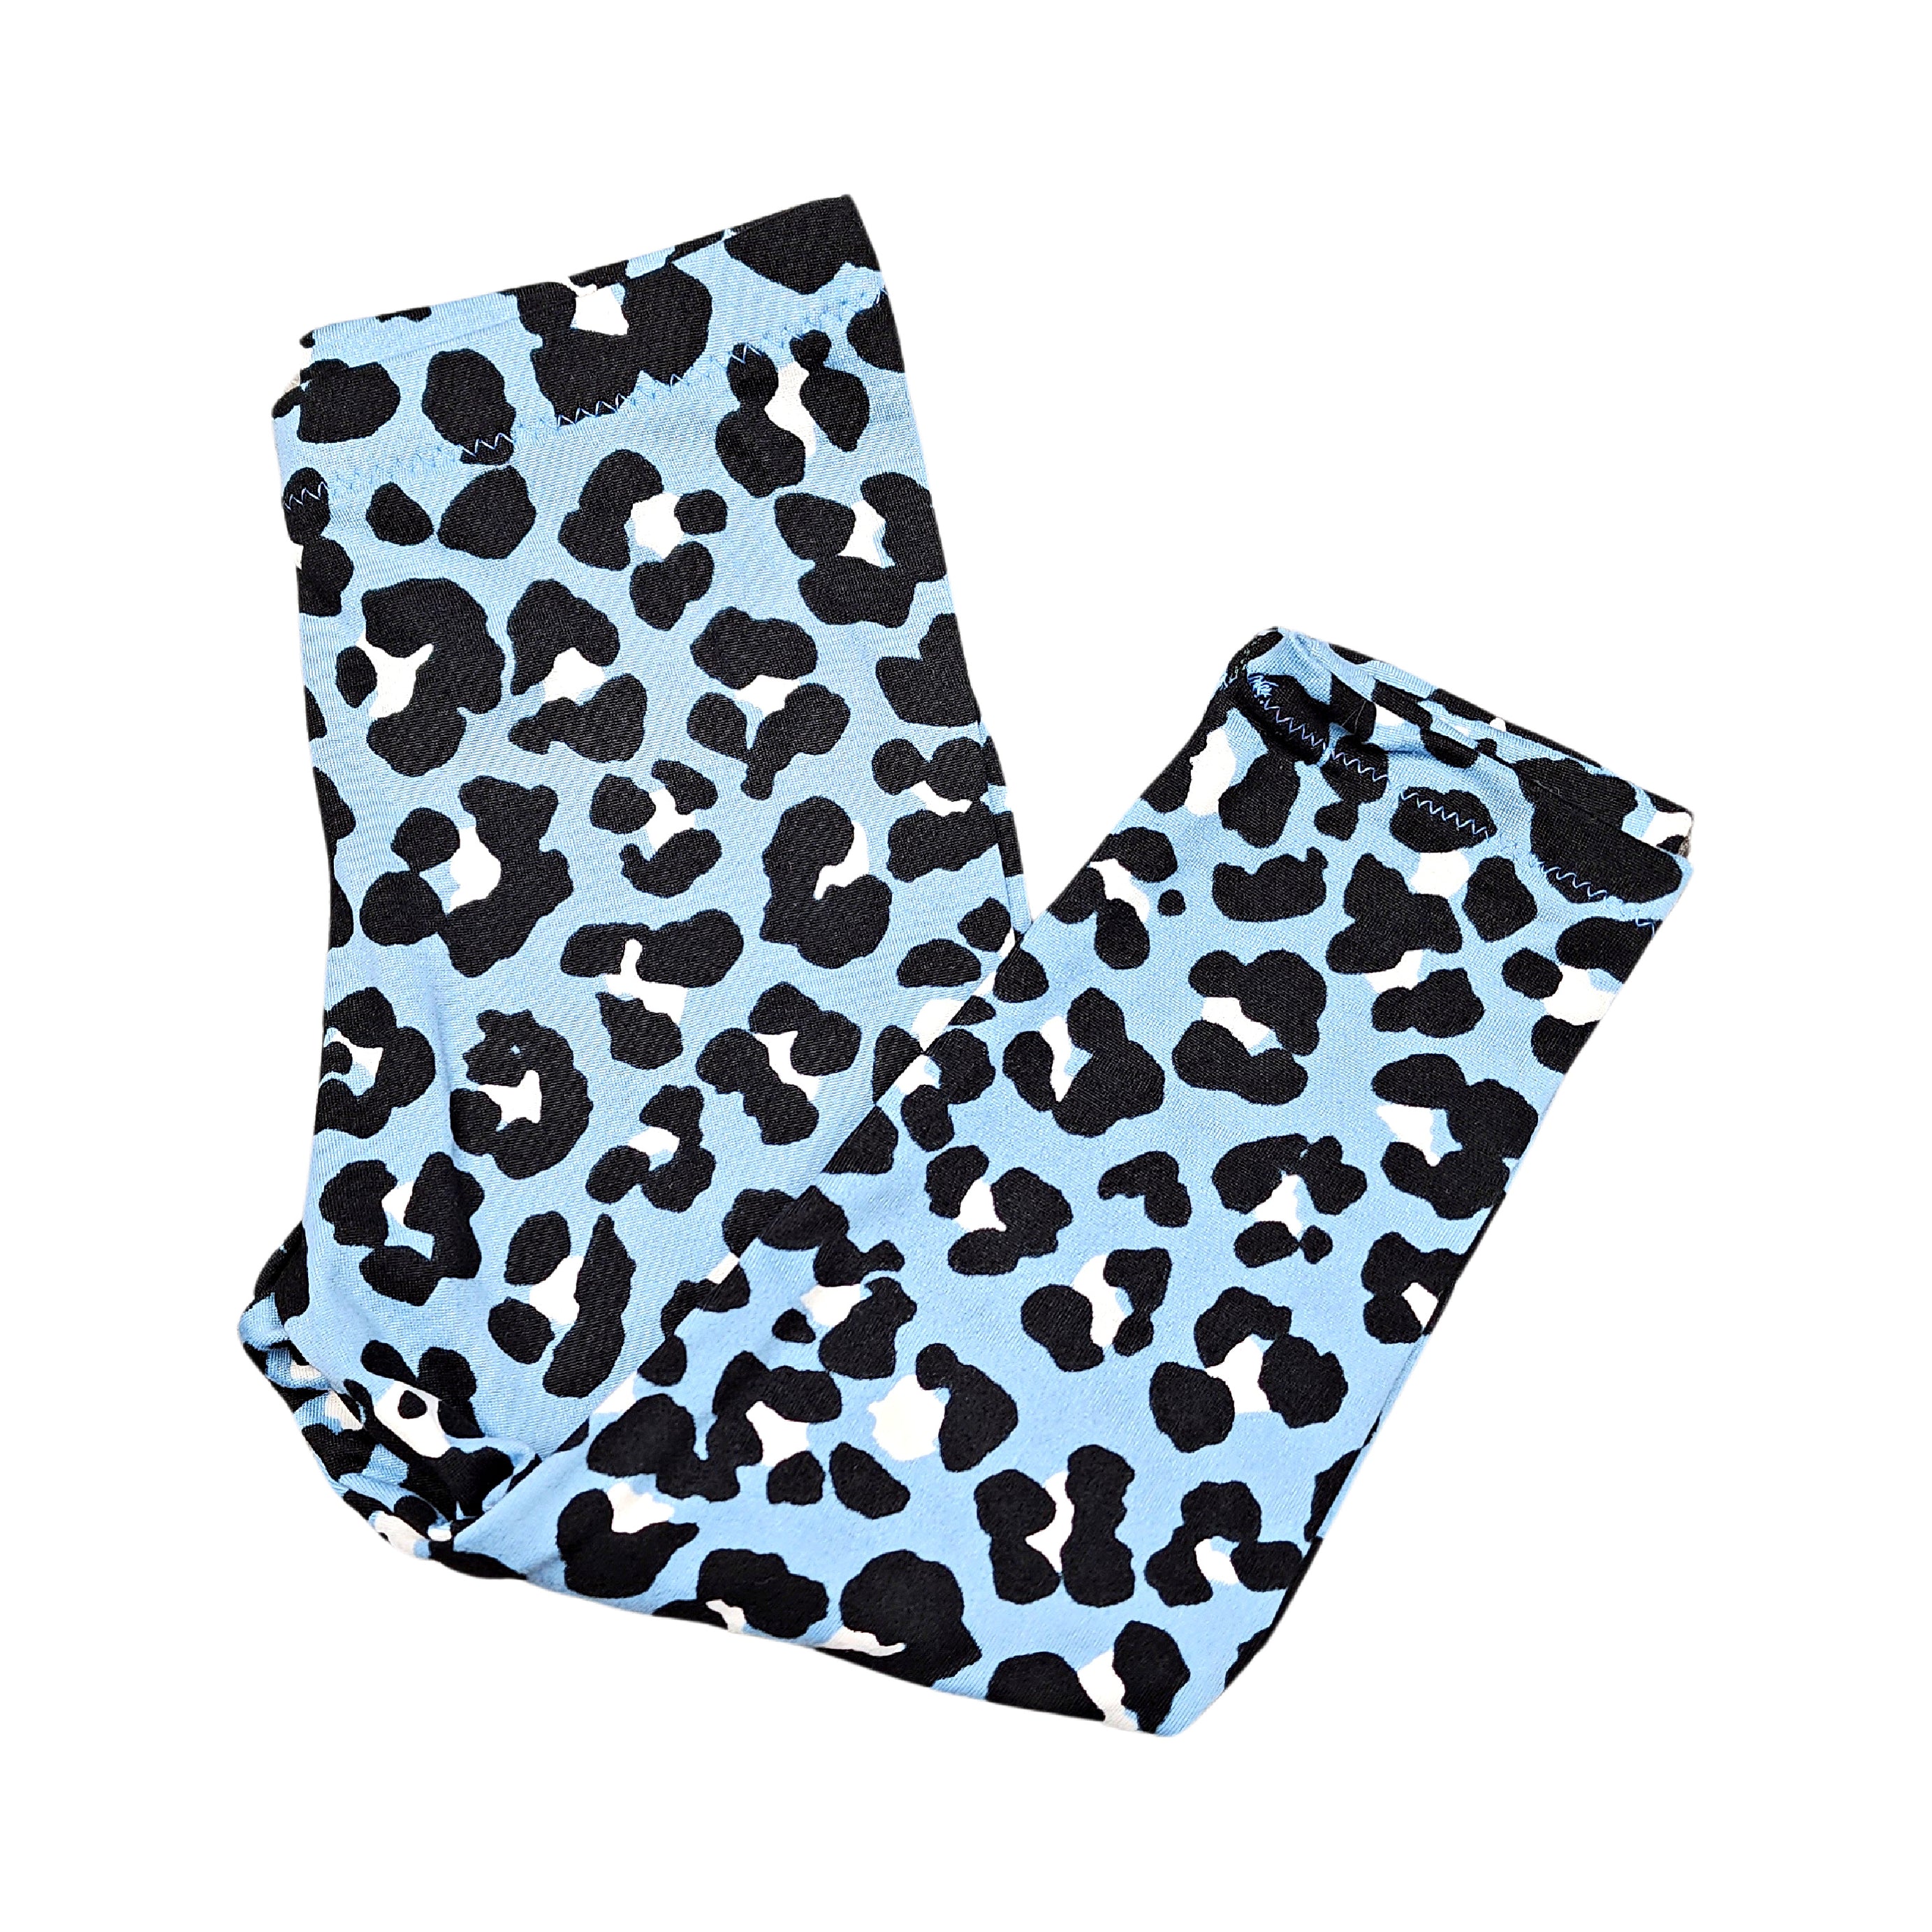 Leopard Print Leggings for Girls, NB -12, Light Blue and Black